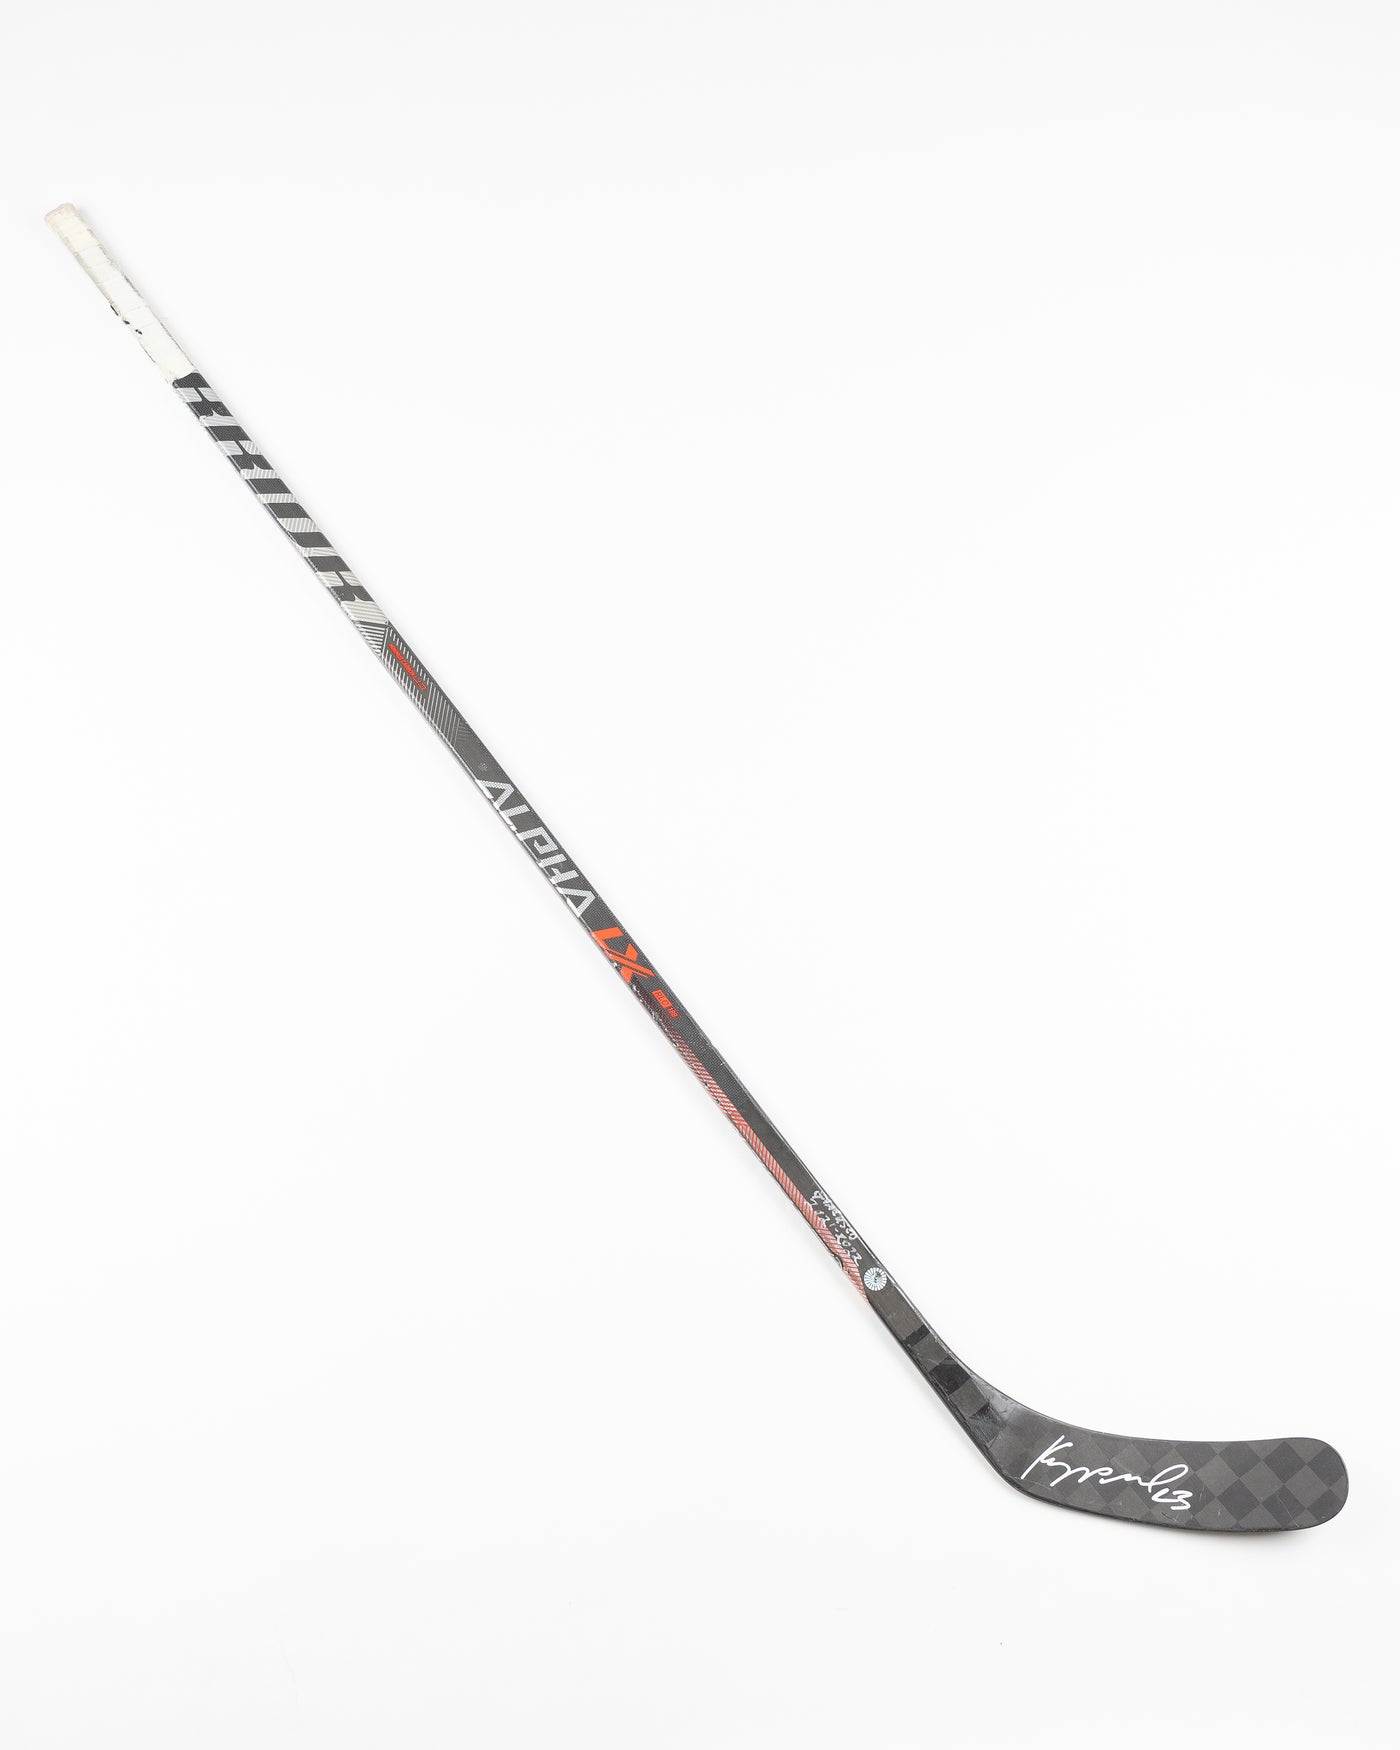 signed and game used Chicago Blackhawks Philipp Kurashev hockey stick - front lay flat